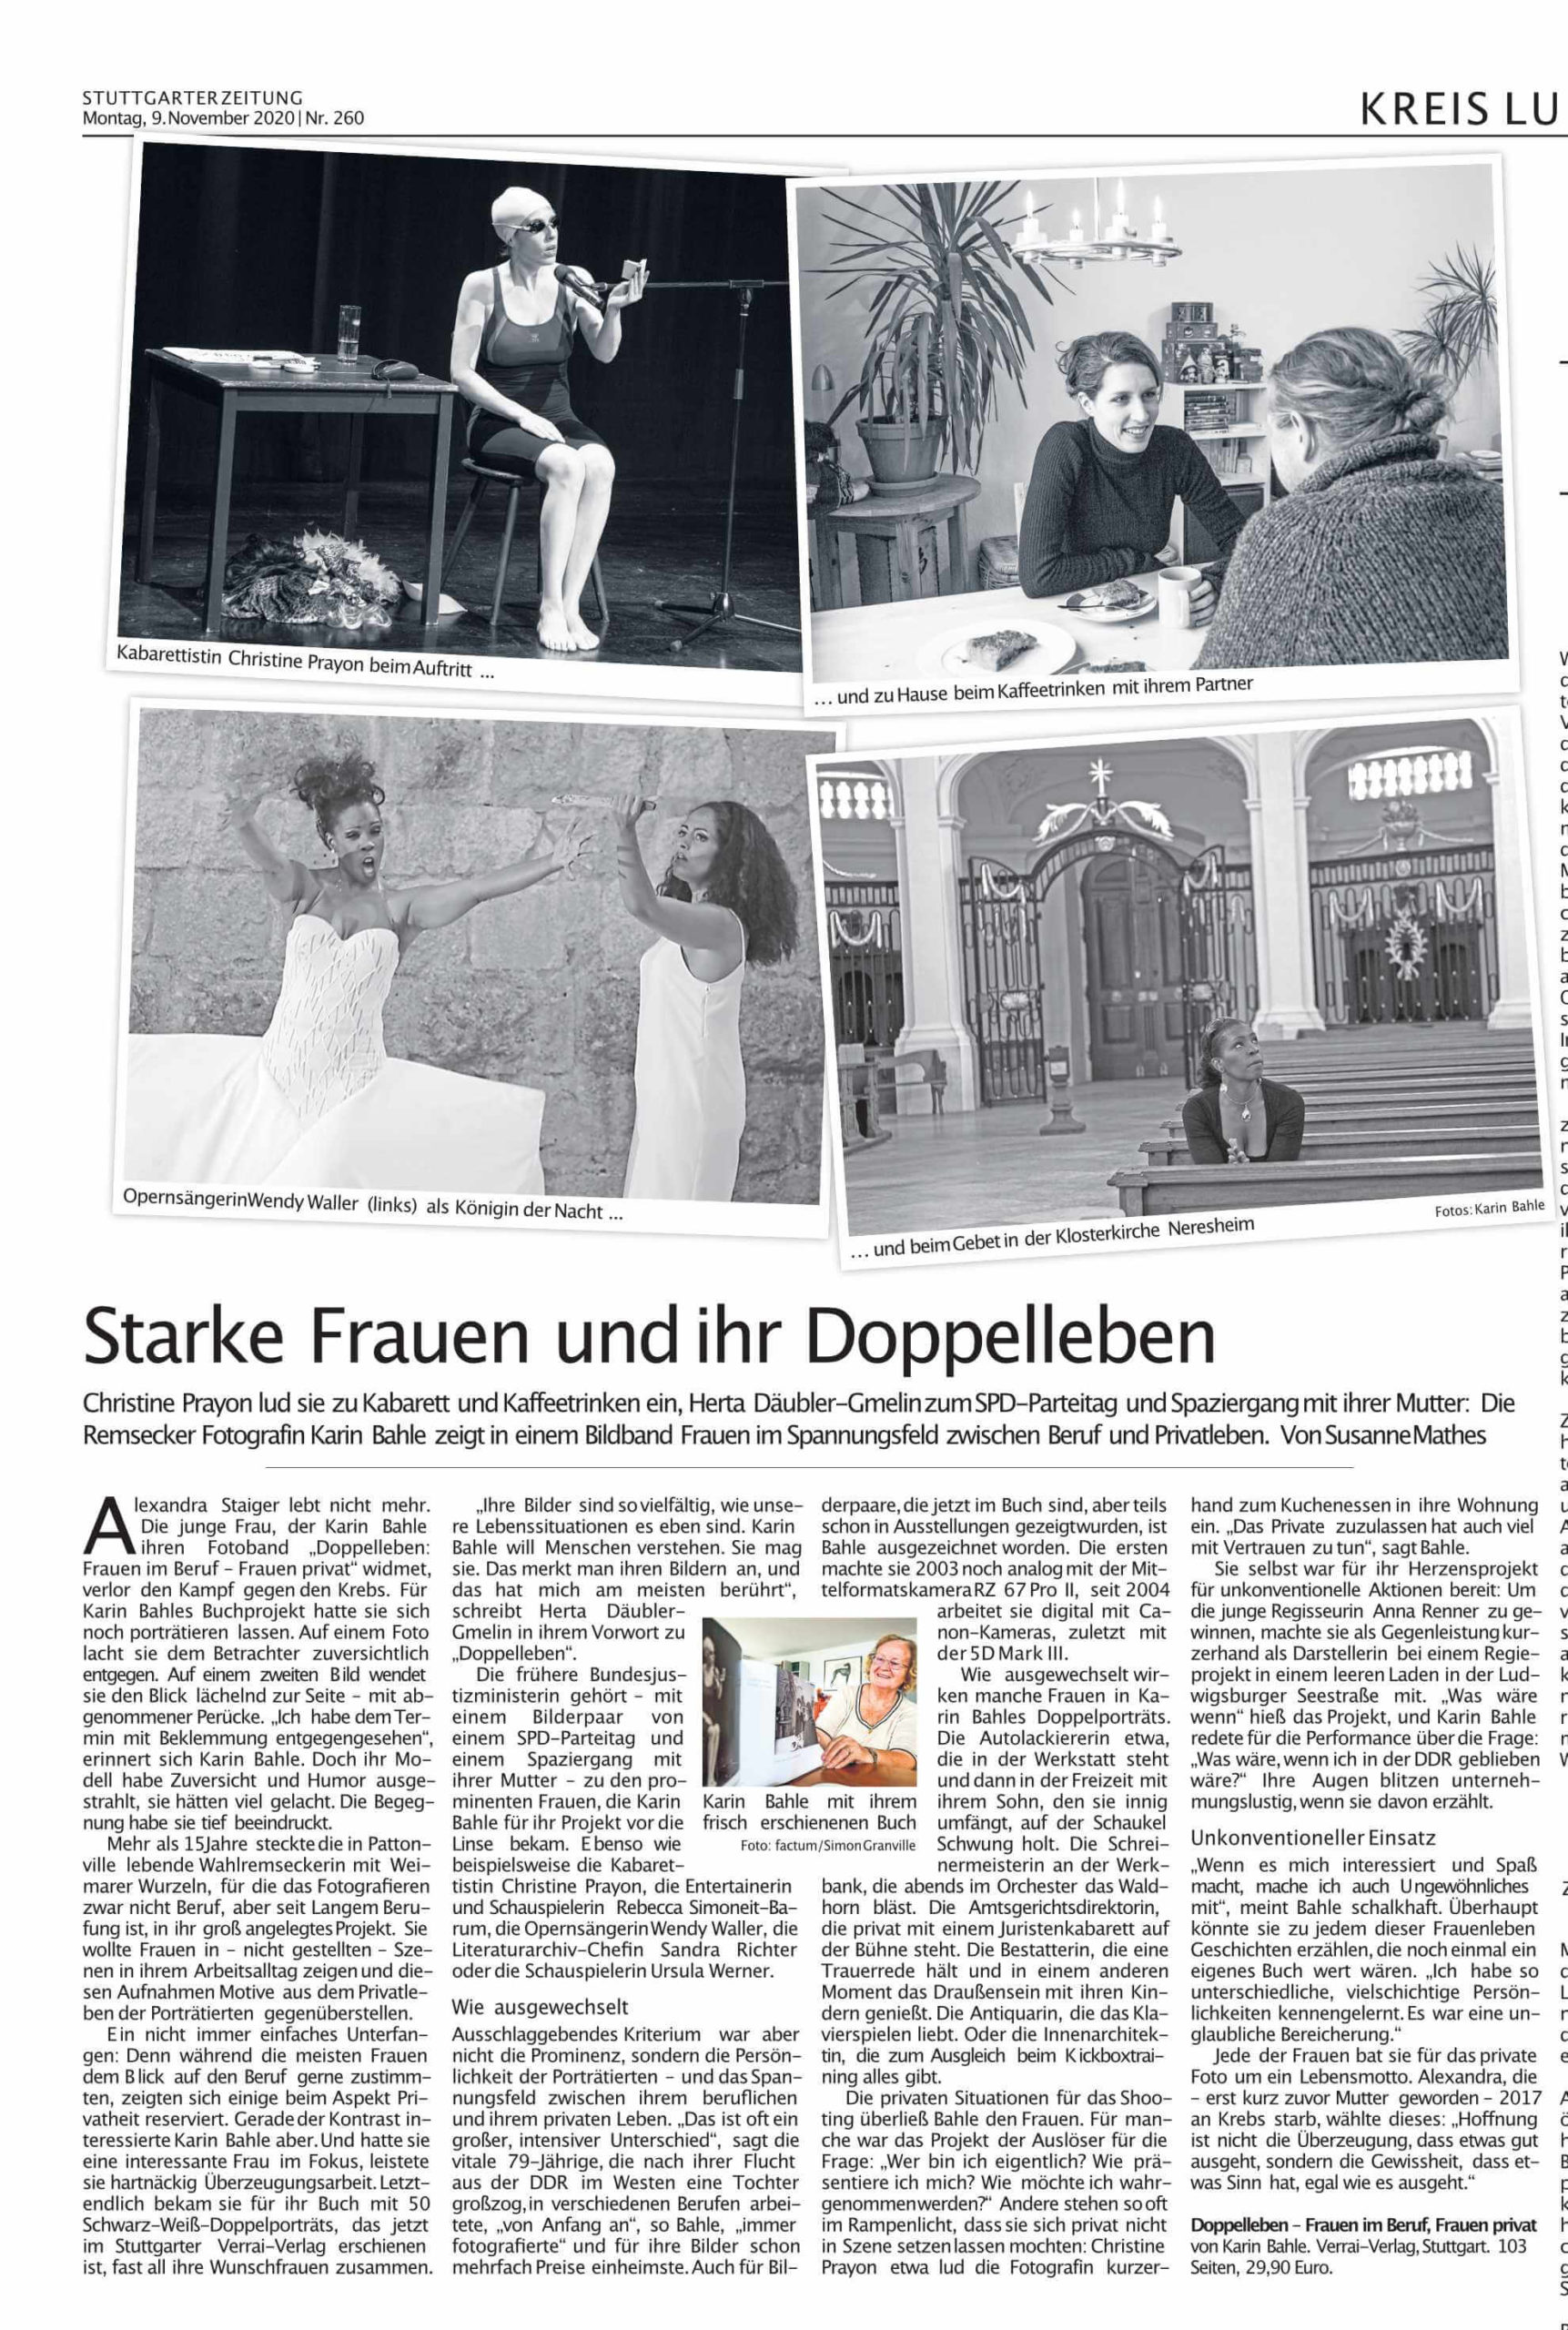 Doppelleben: Artikel aus der Stuttgarter Zeitung vom 9.11.2020